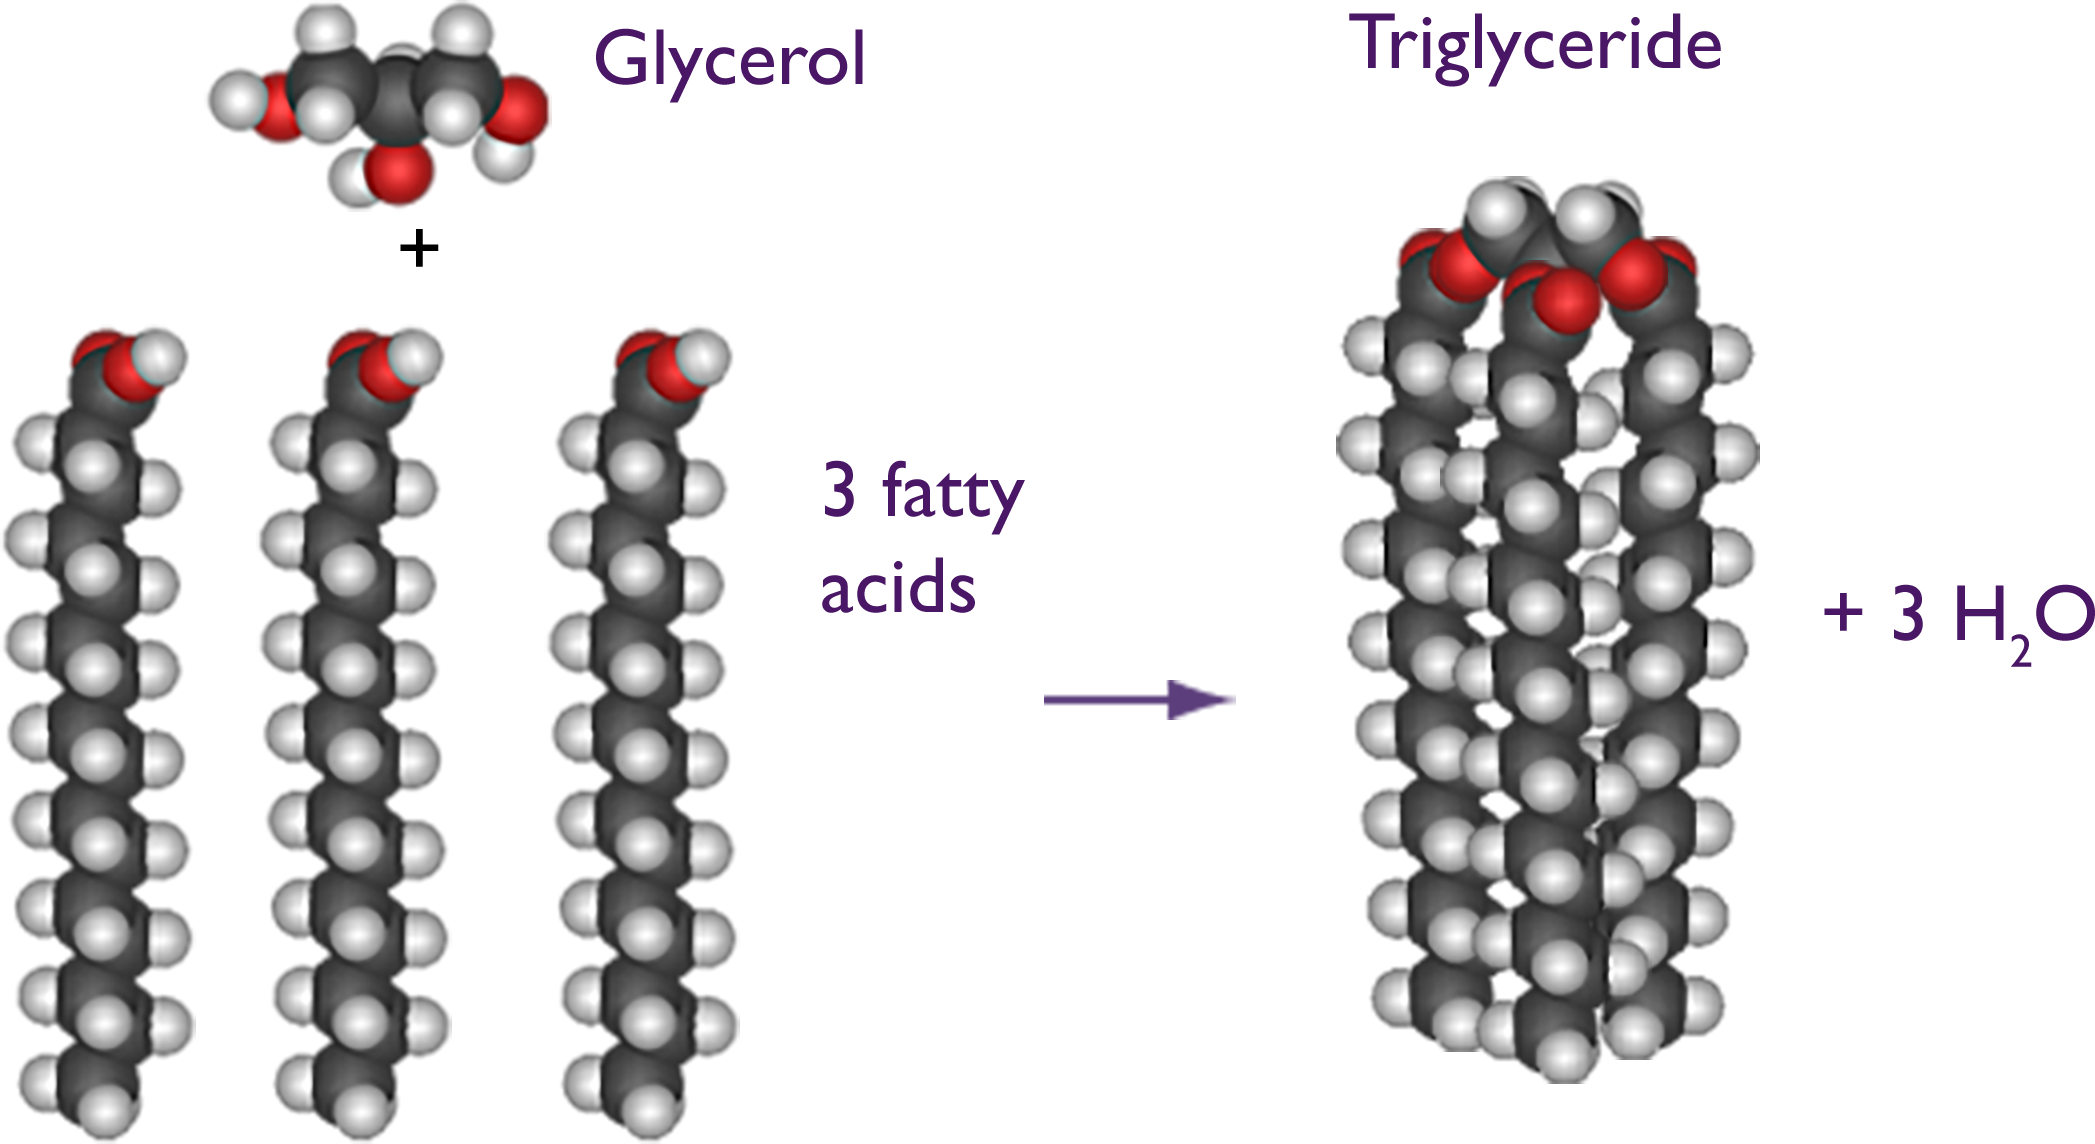 Glycerol plus 3 fatty acids equals a tri-glyceride plus 3 water molecules.